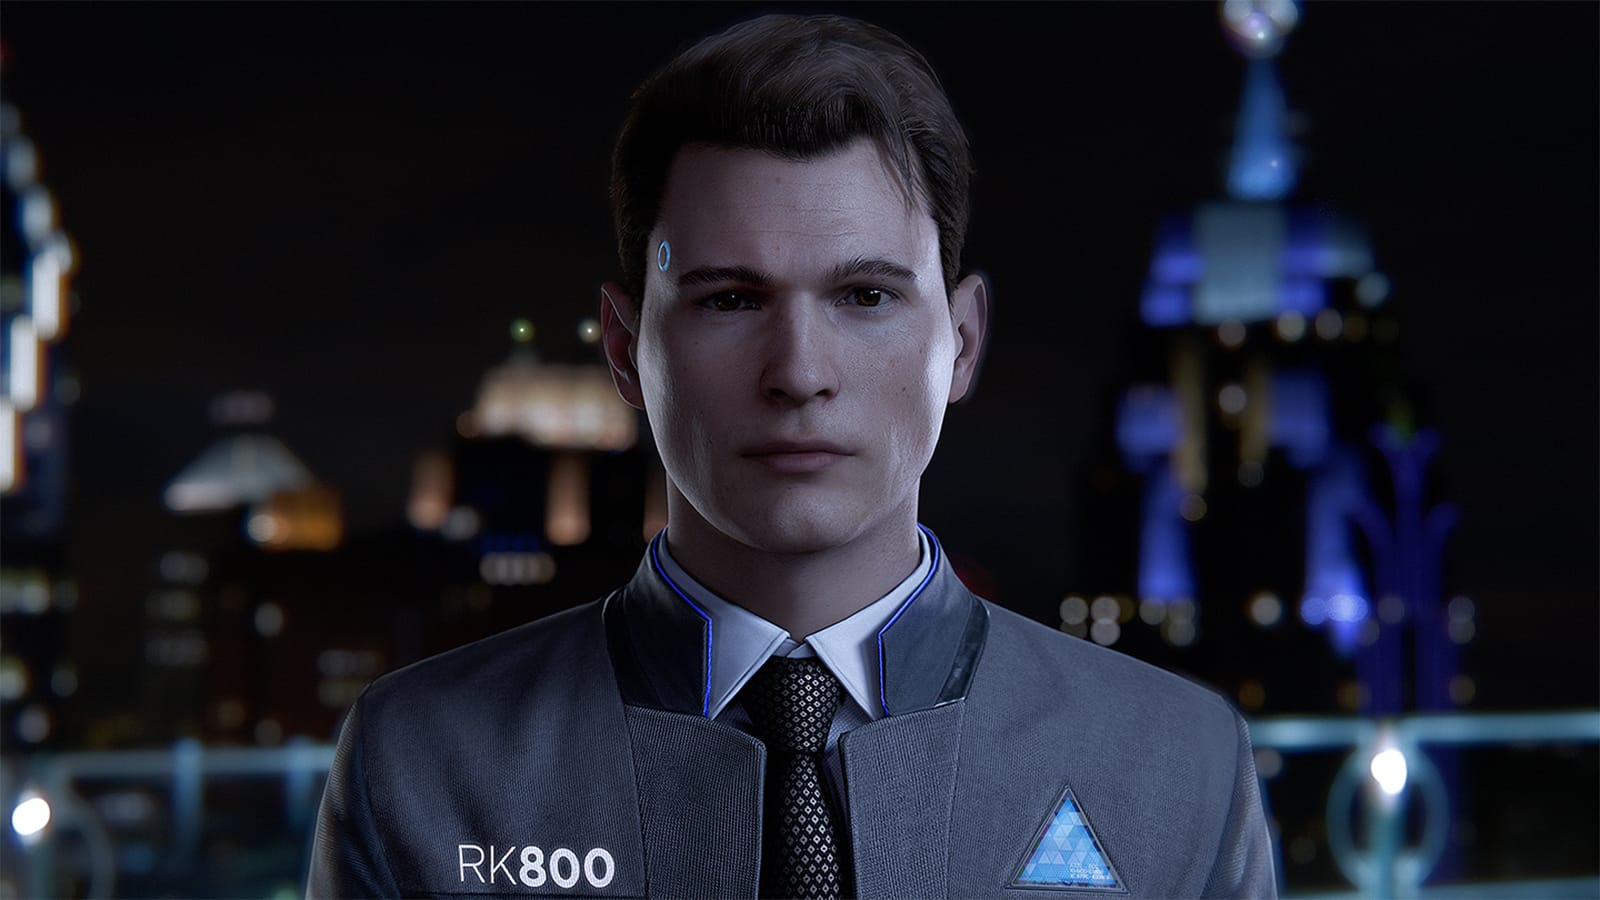 A Connor karakter Detroitban megjelenik